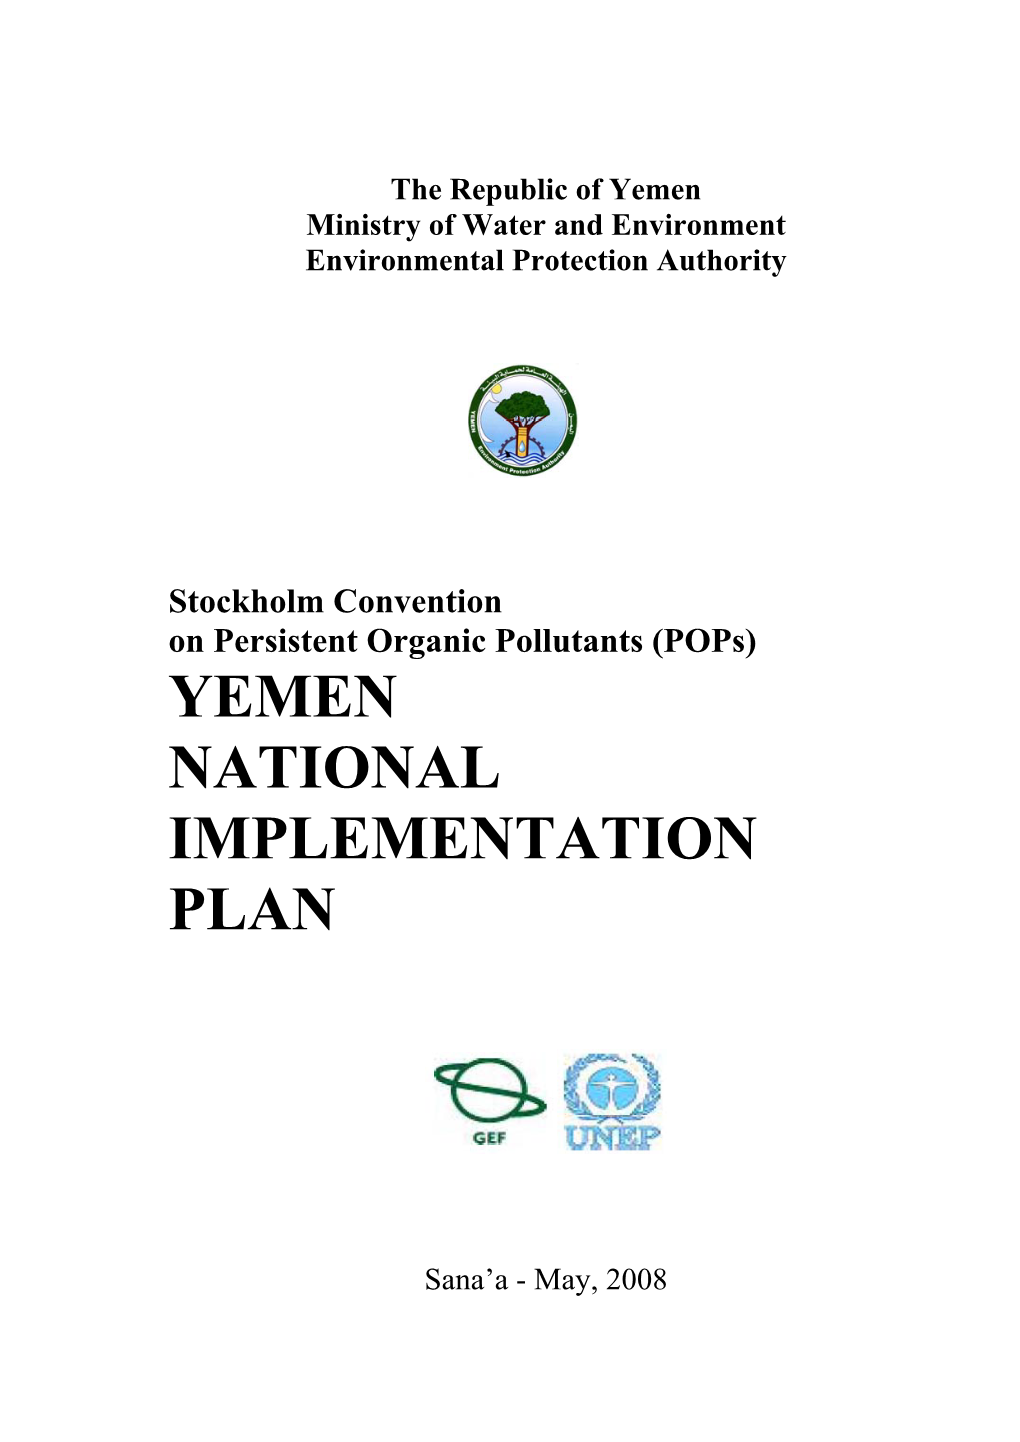 Yemen National Implementation Plan